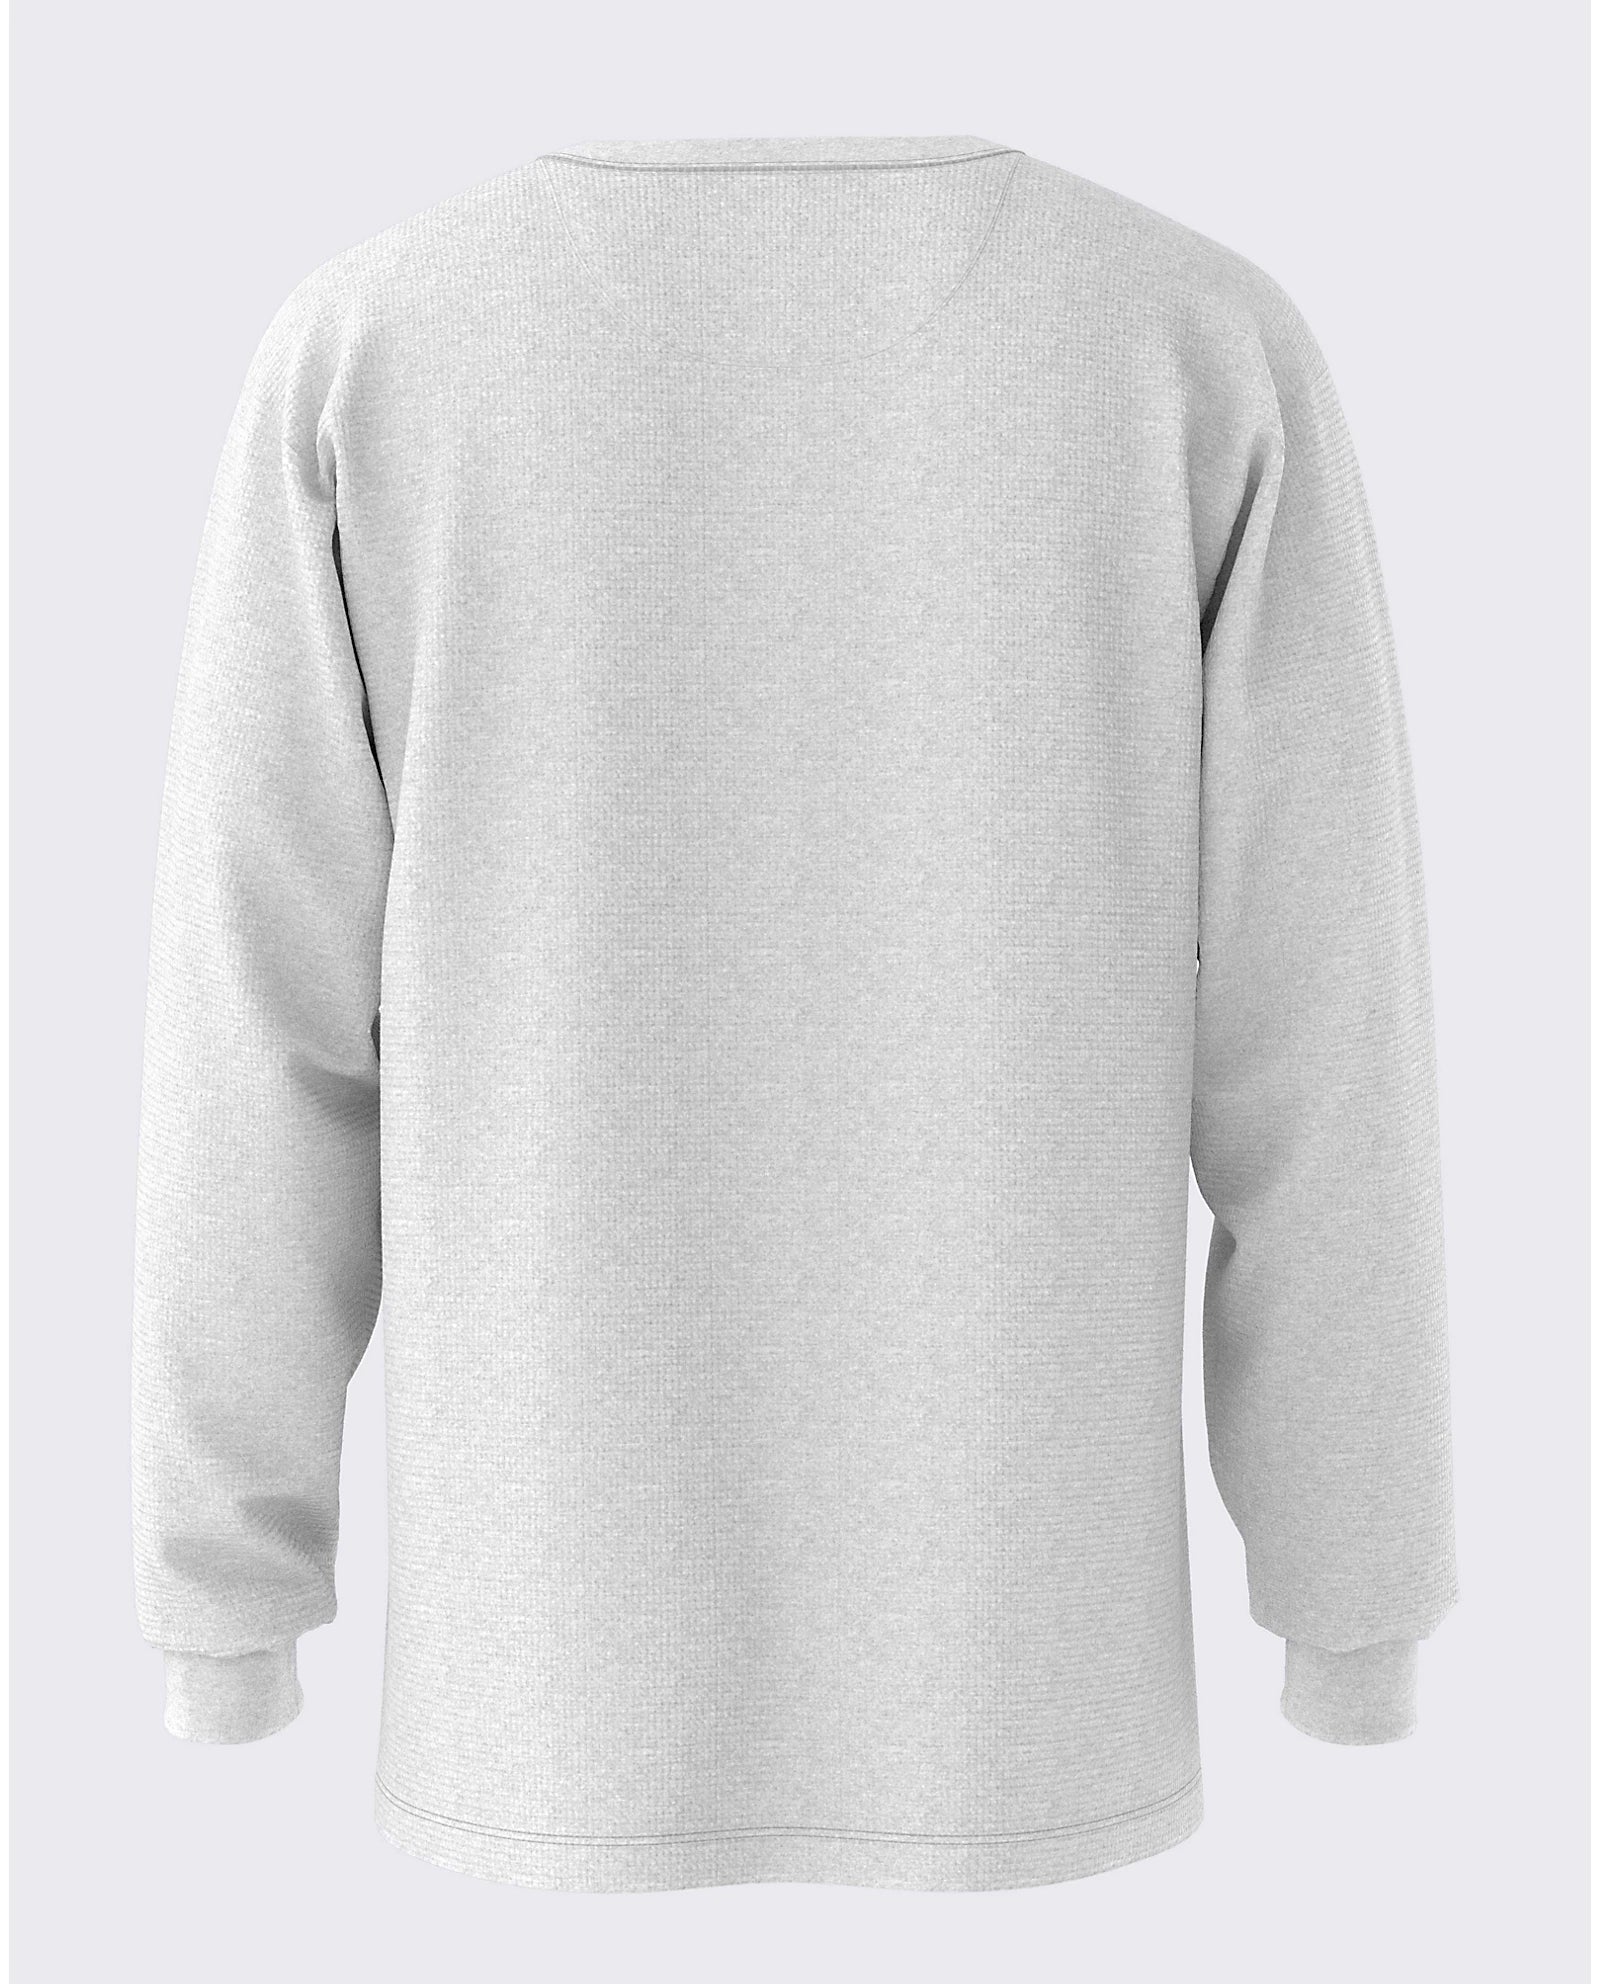 Vans Alder Long Sleeve Pocket Thermal - Heather Grey Mens Shirt